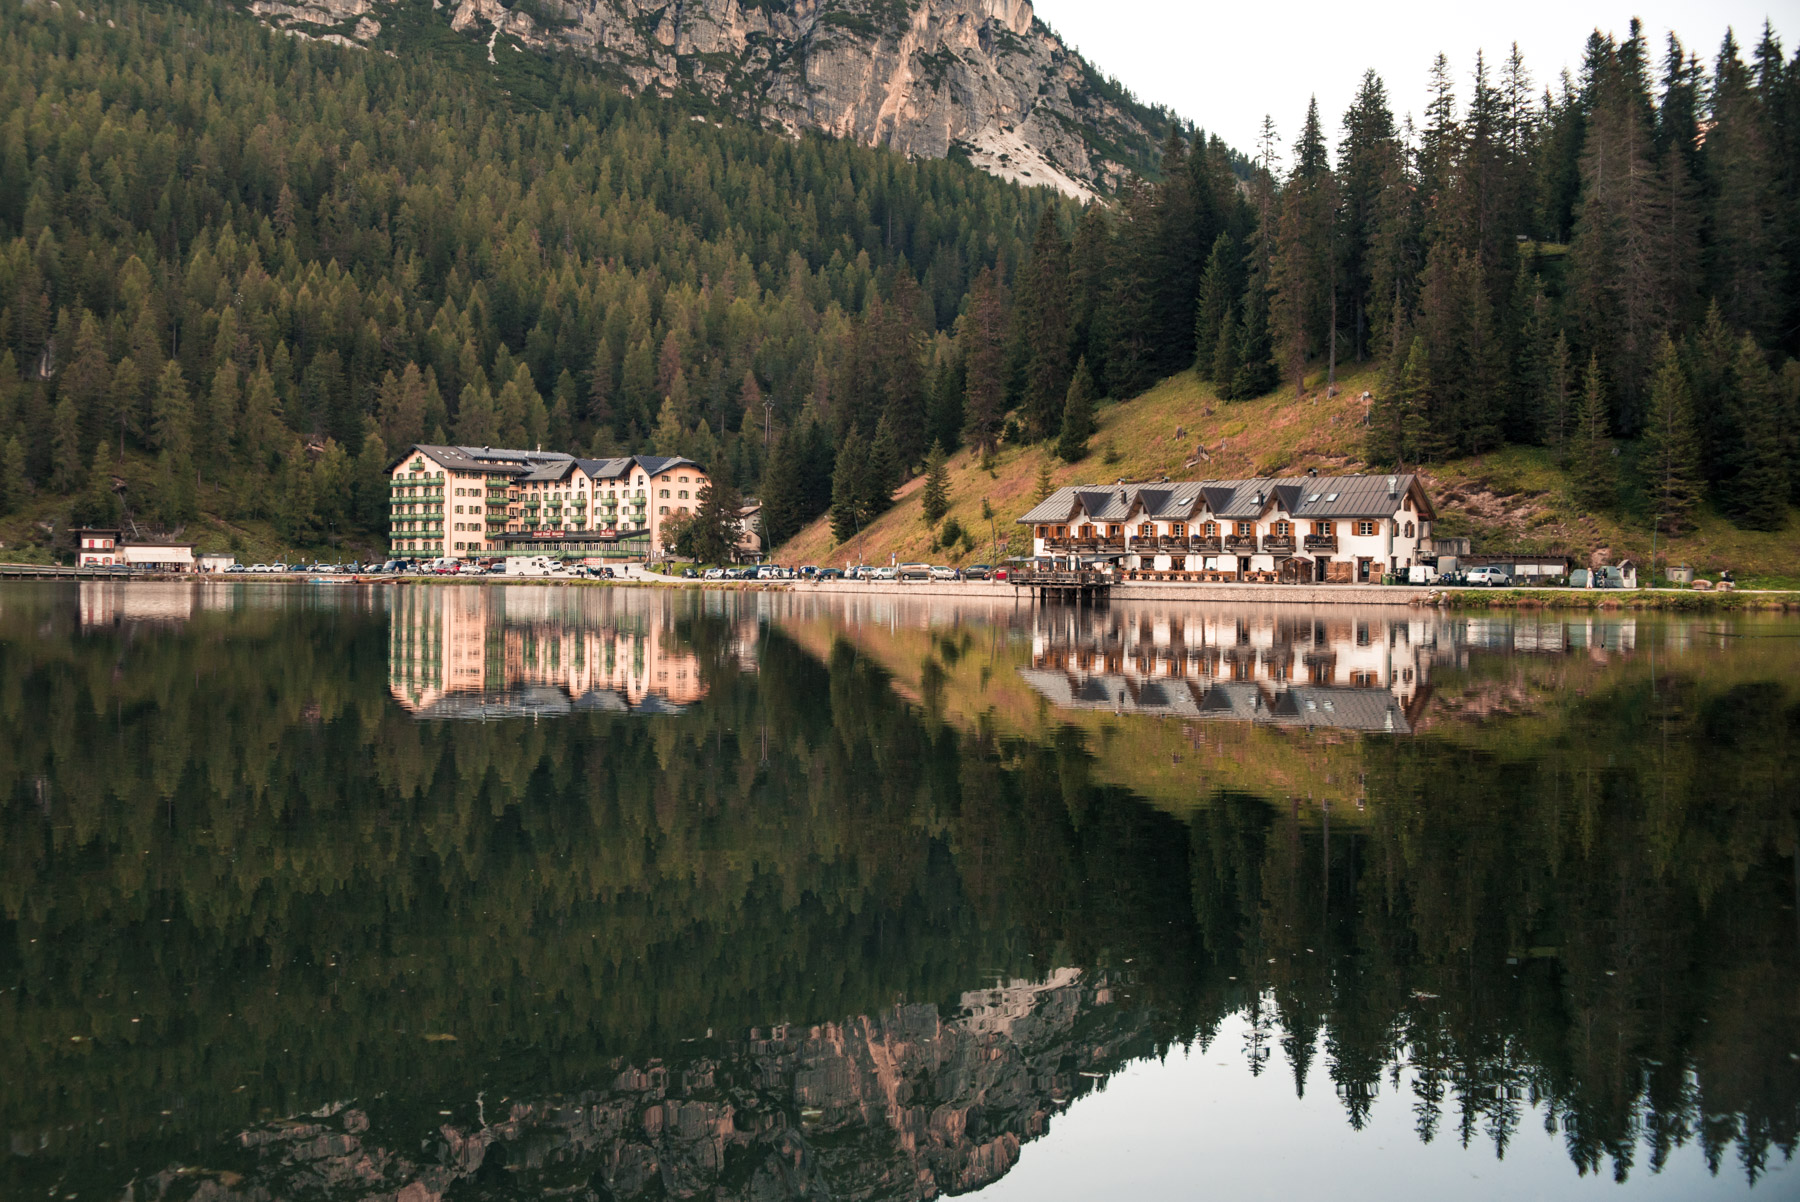 Landscape photography of the water refletions of Misurina Lake in the Dolomites, fotografia di paesaggio che ritrae i riflessi sul lago di Misurina sulle Dolomiti